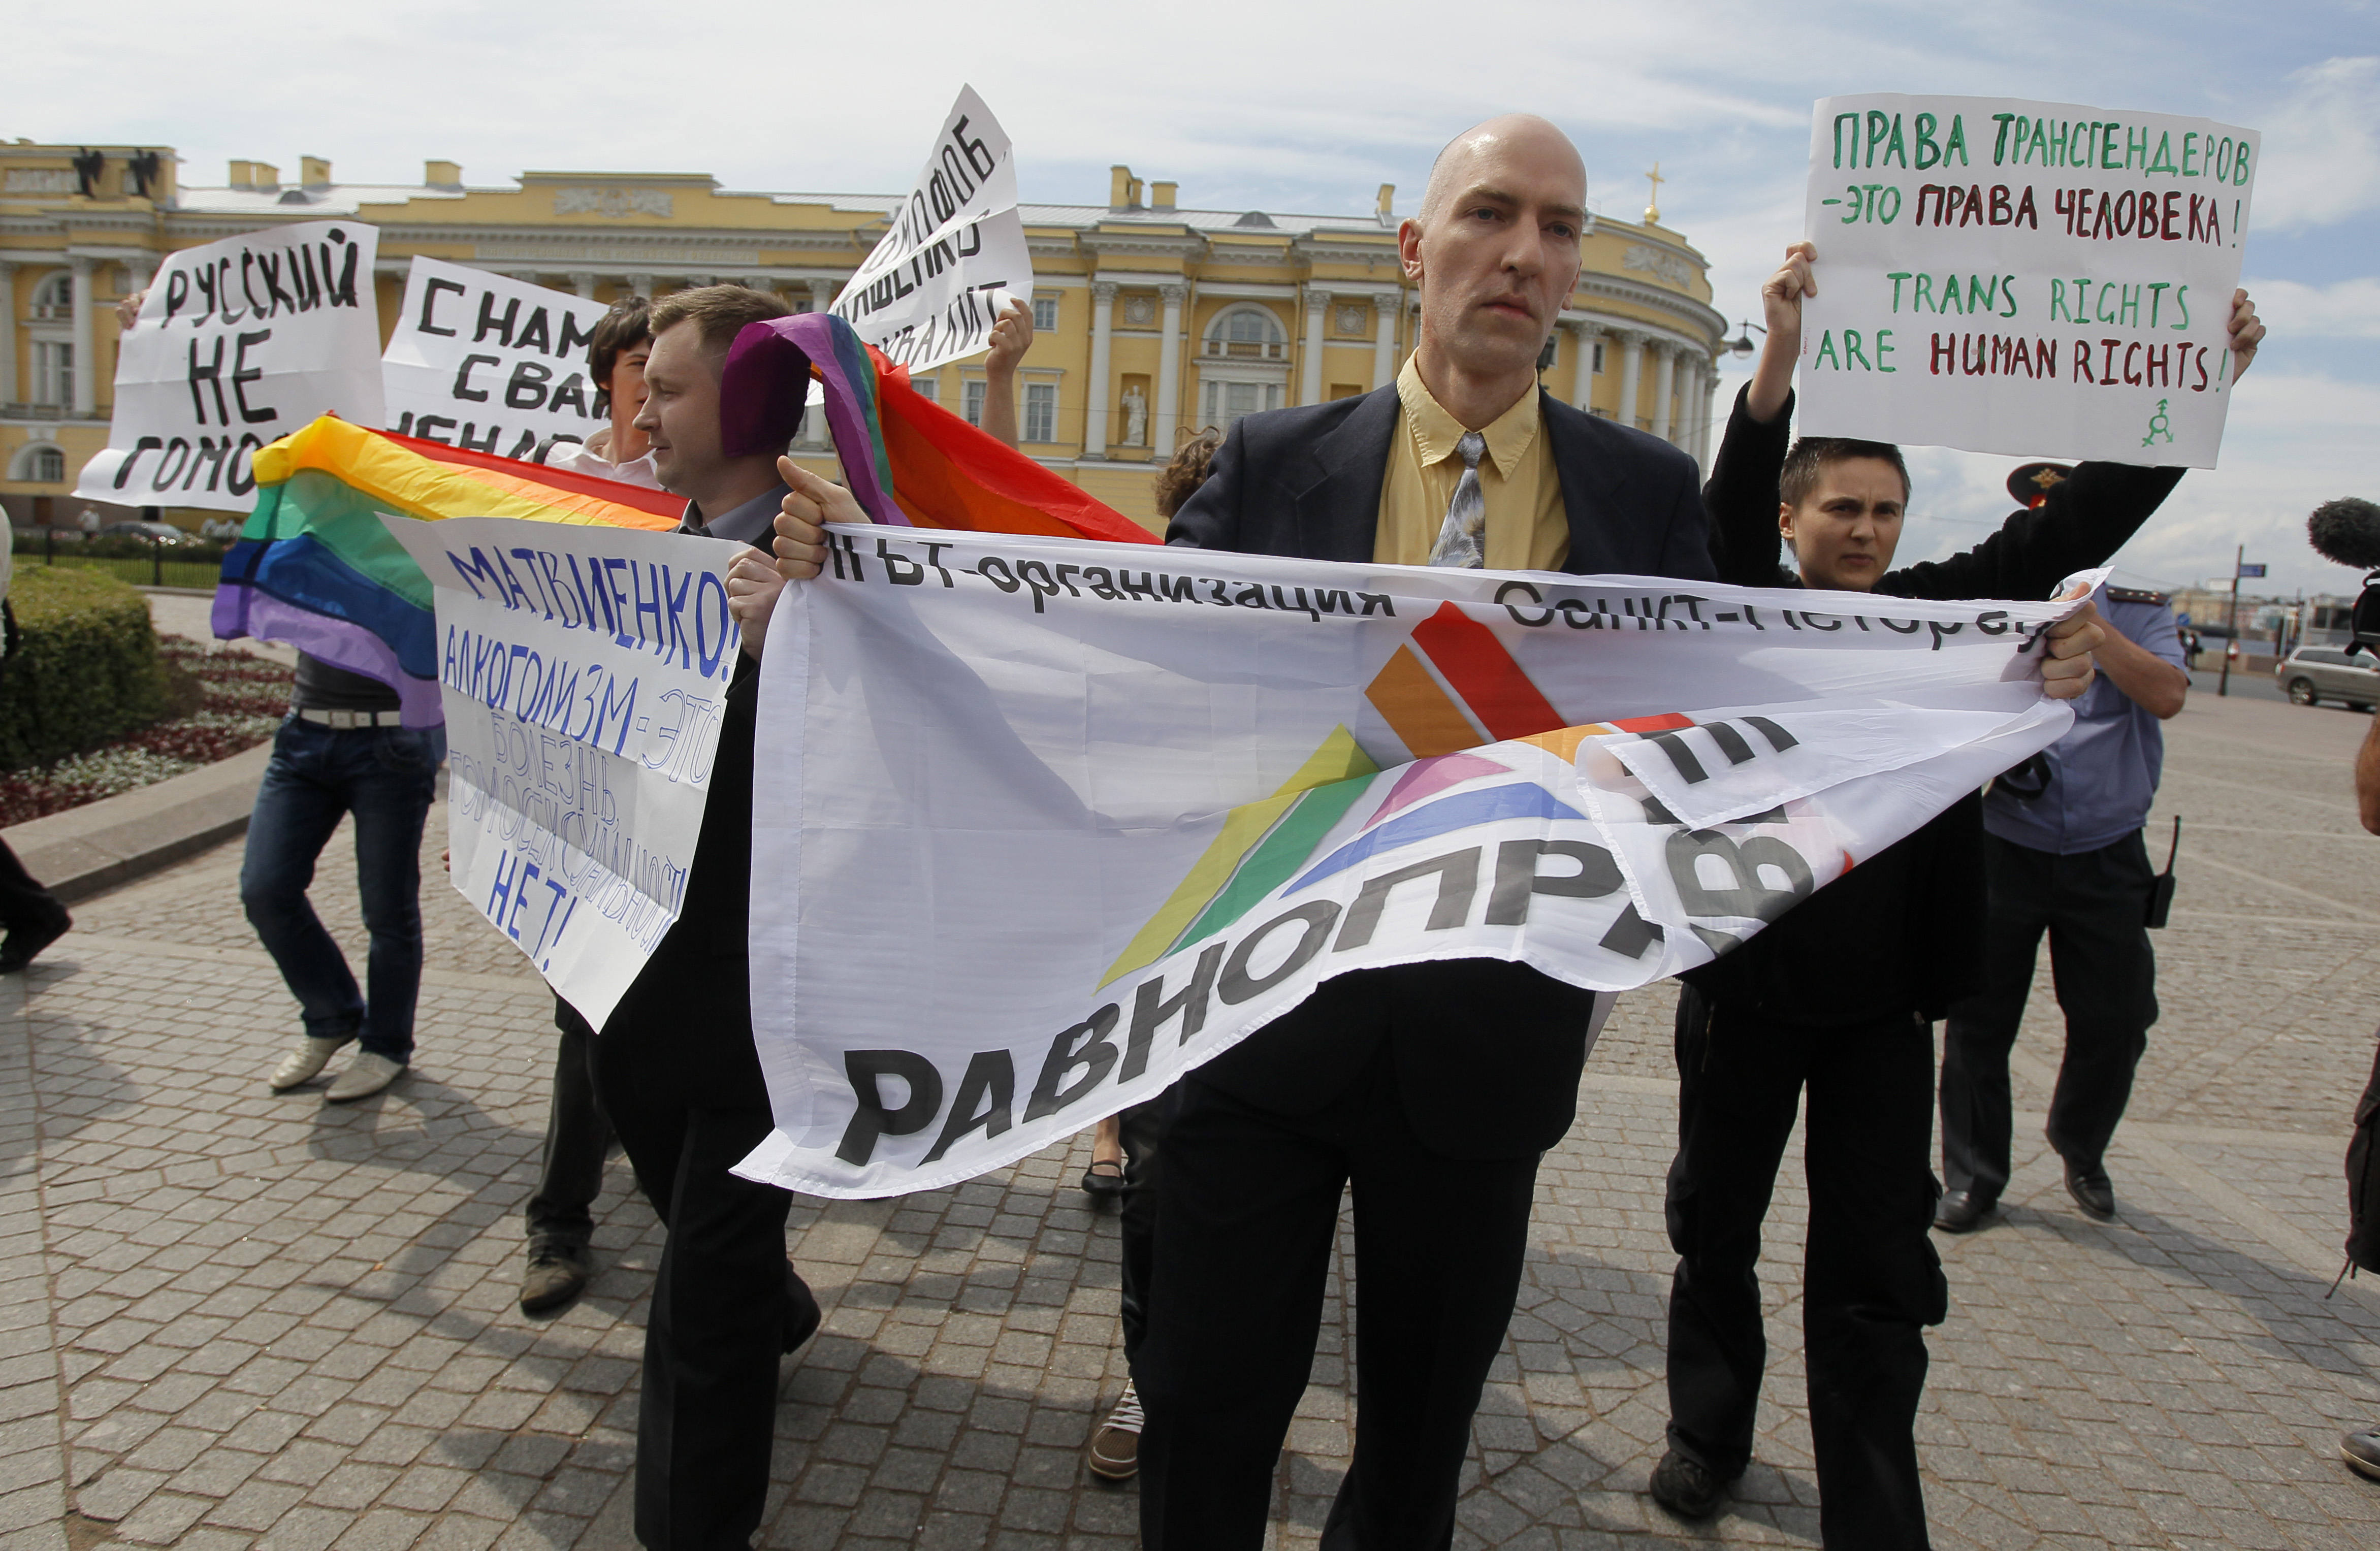 Homoattack, Ryssland, Volgograd, Hatbrott